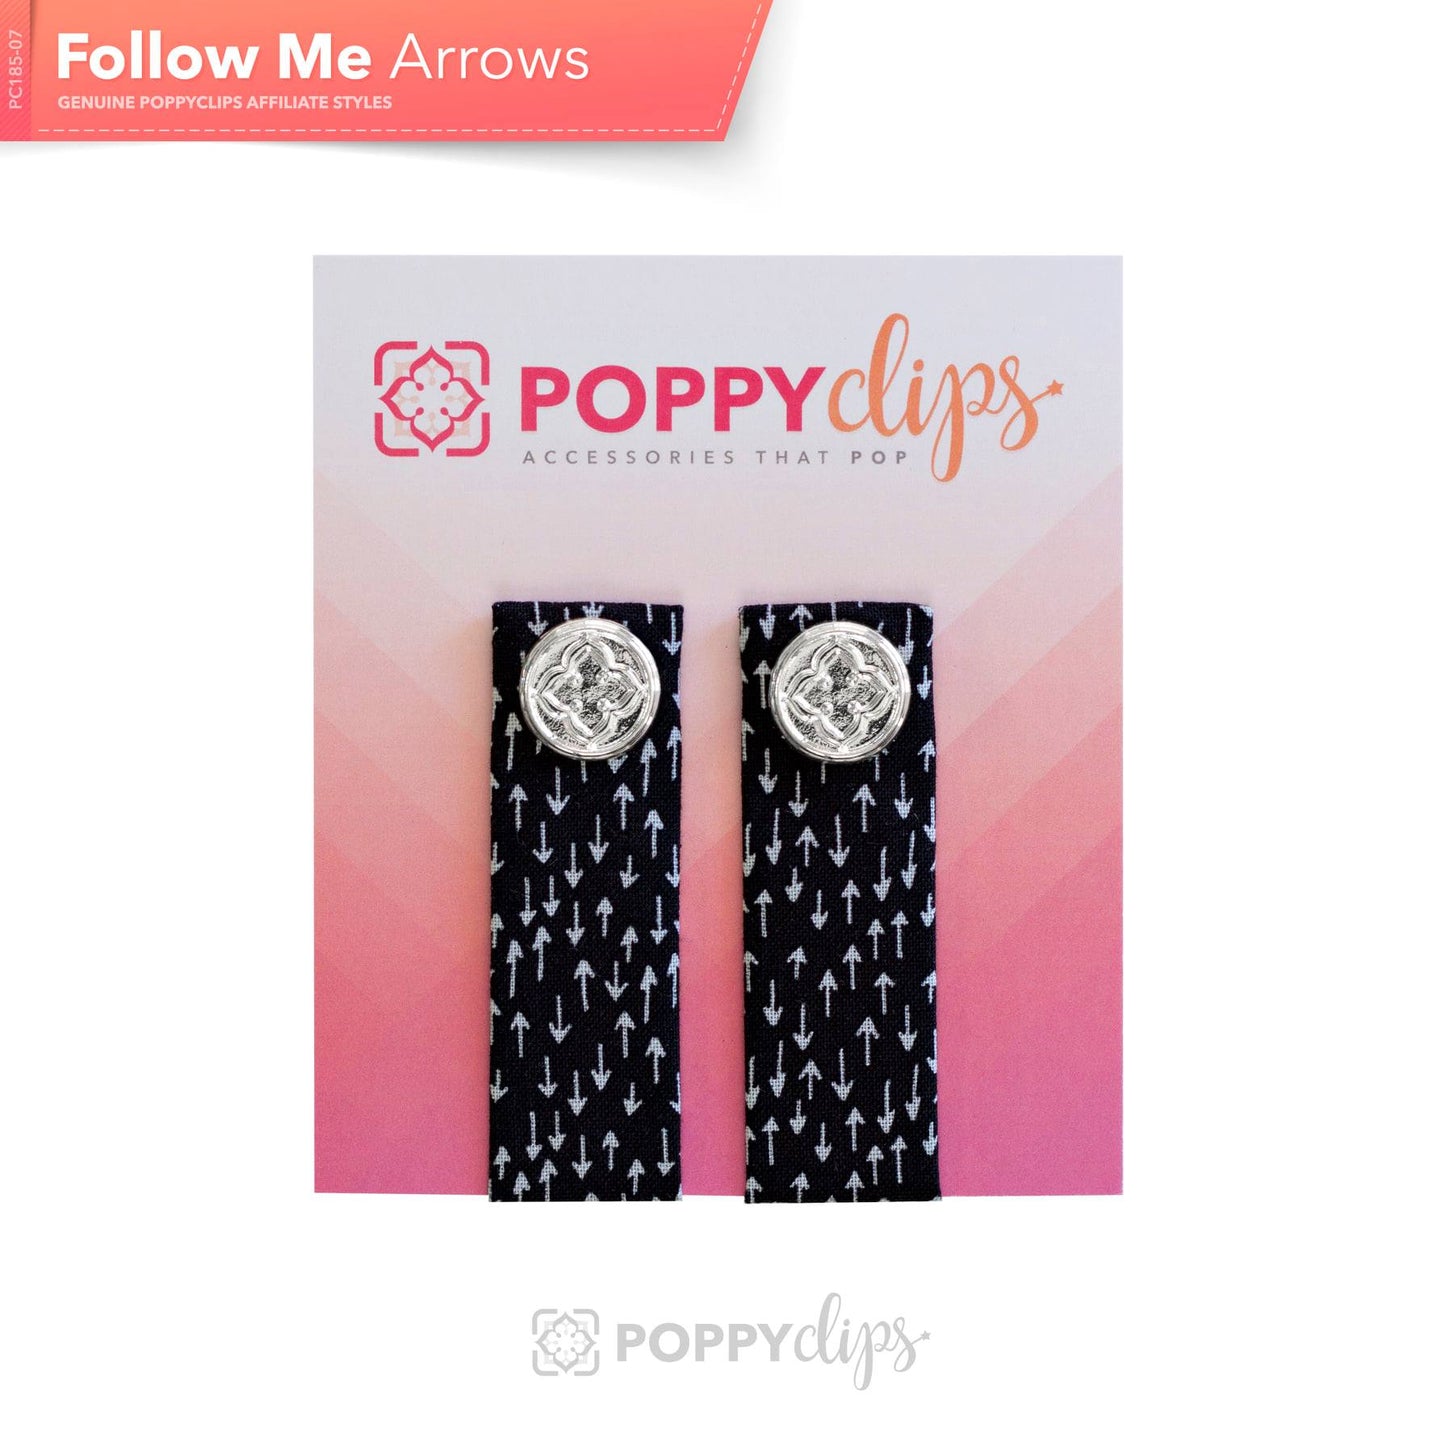 PoppyClips: Follow Me - arrows